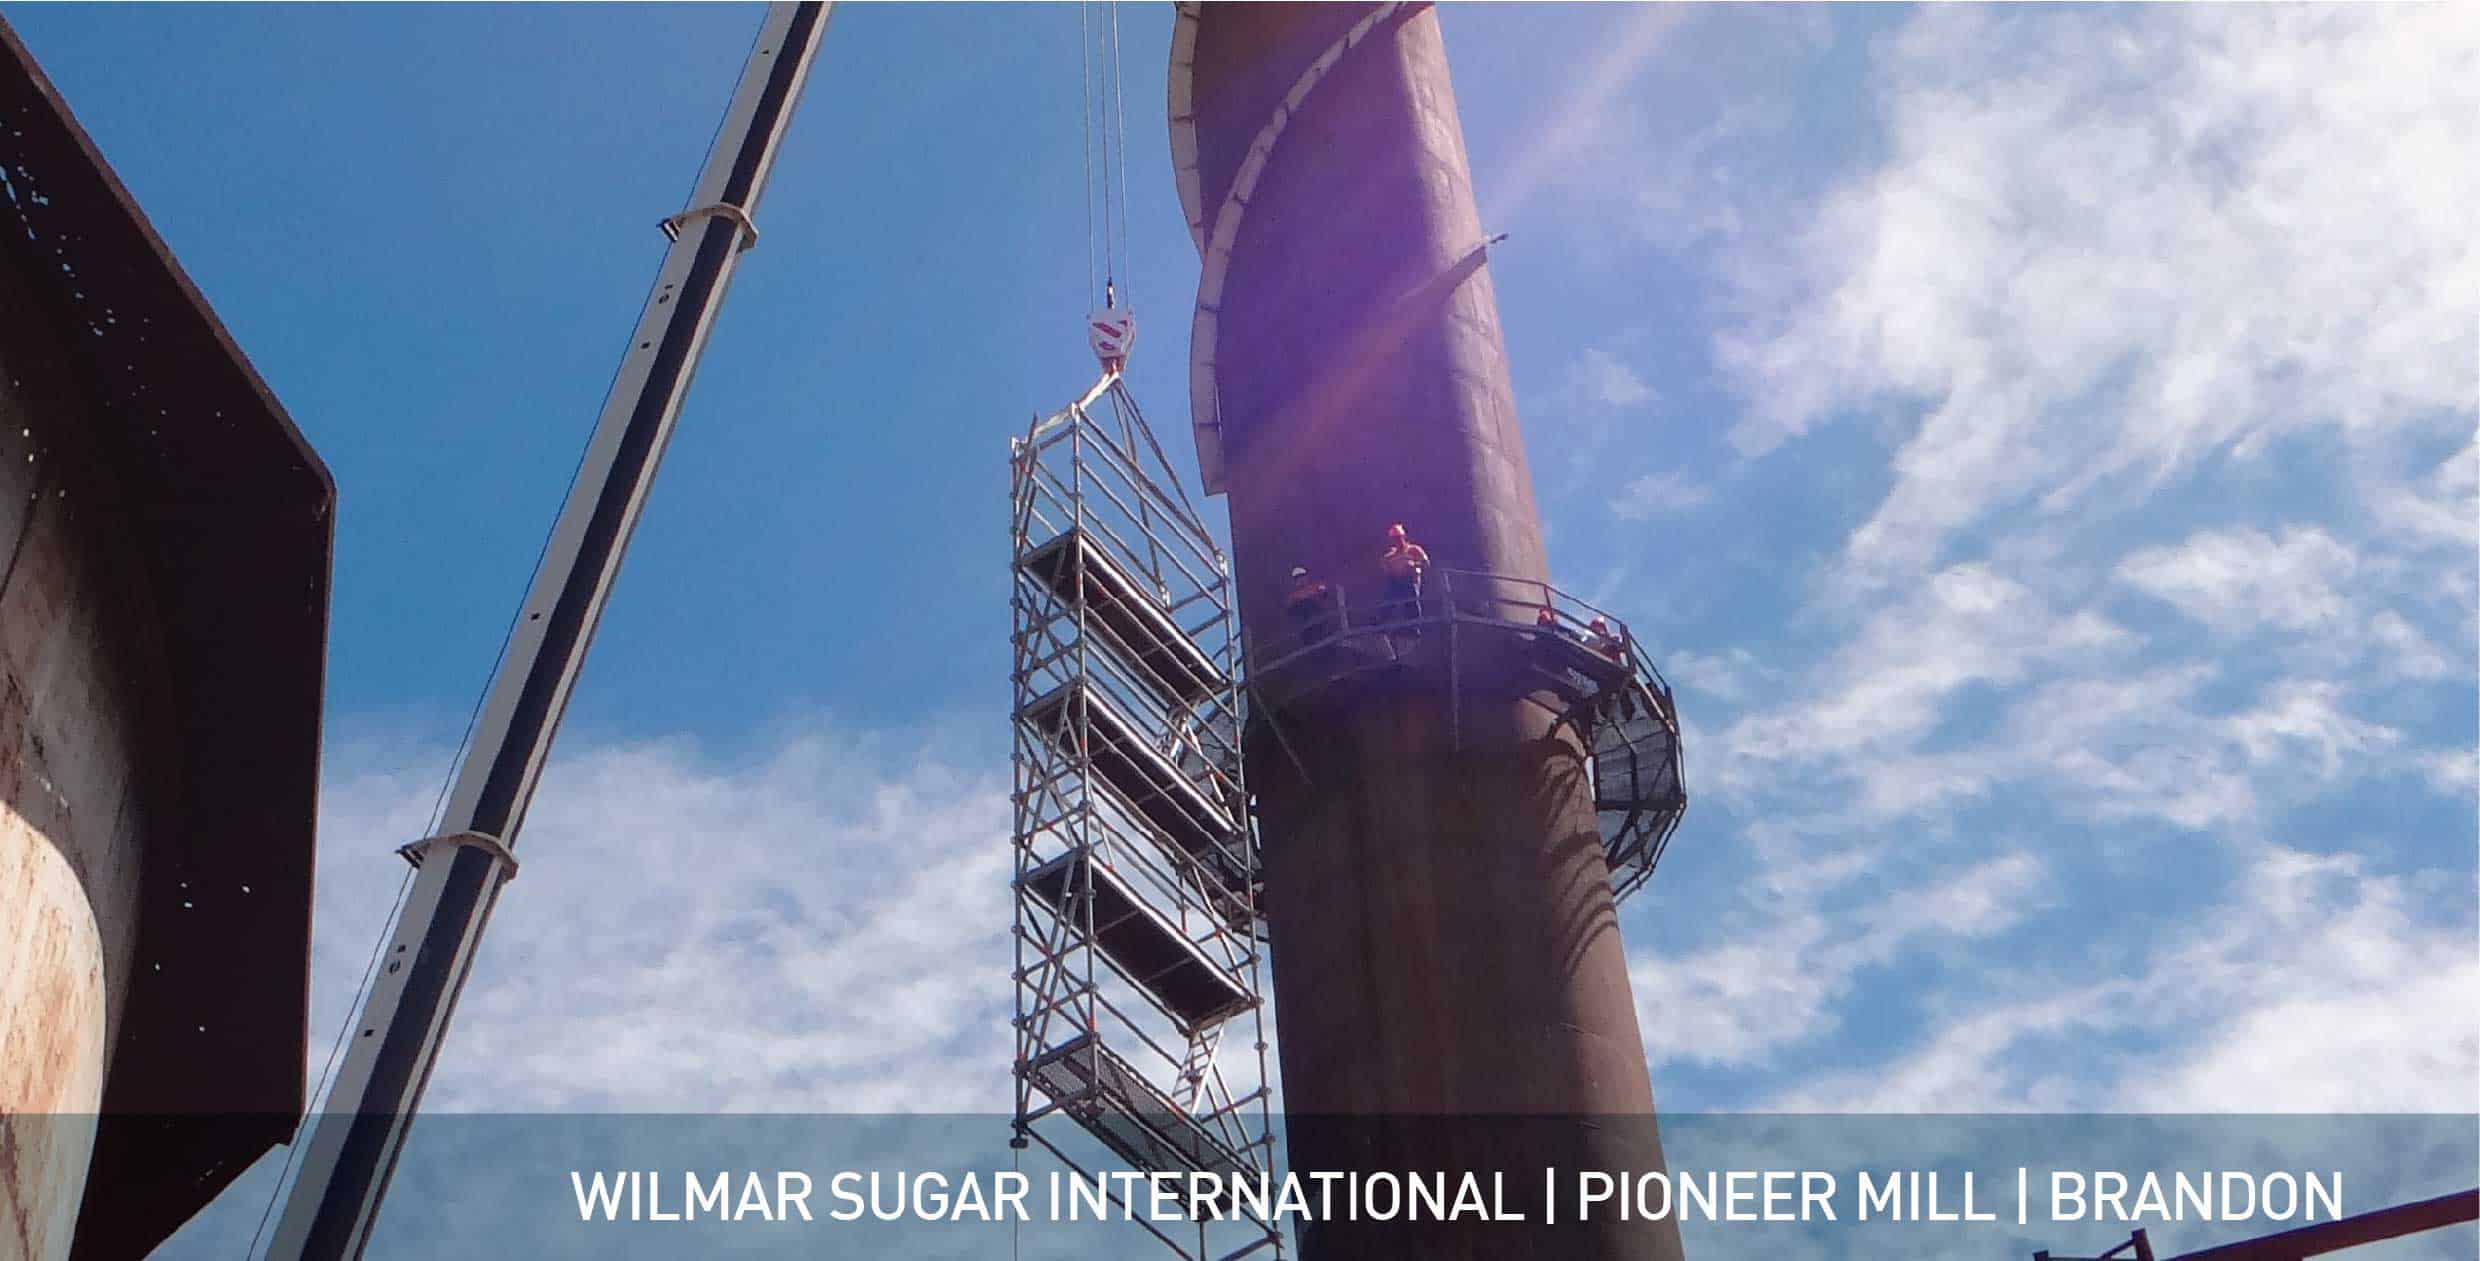 Wilmar Sugar Pioneer Mill 1